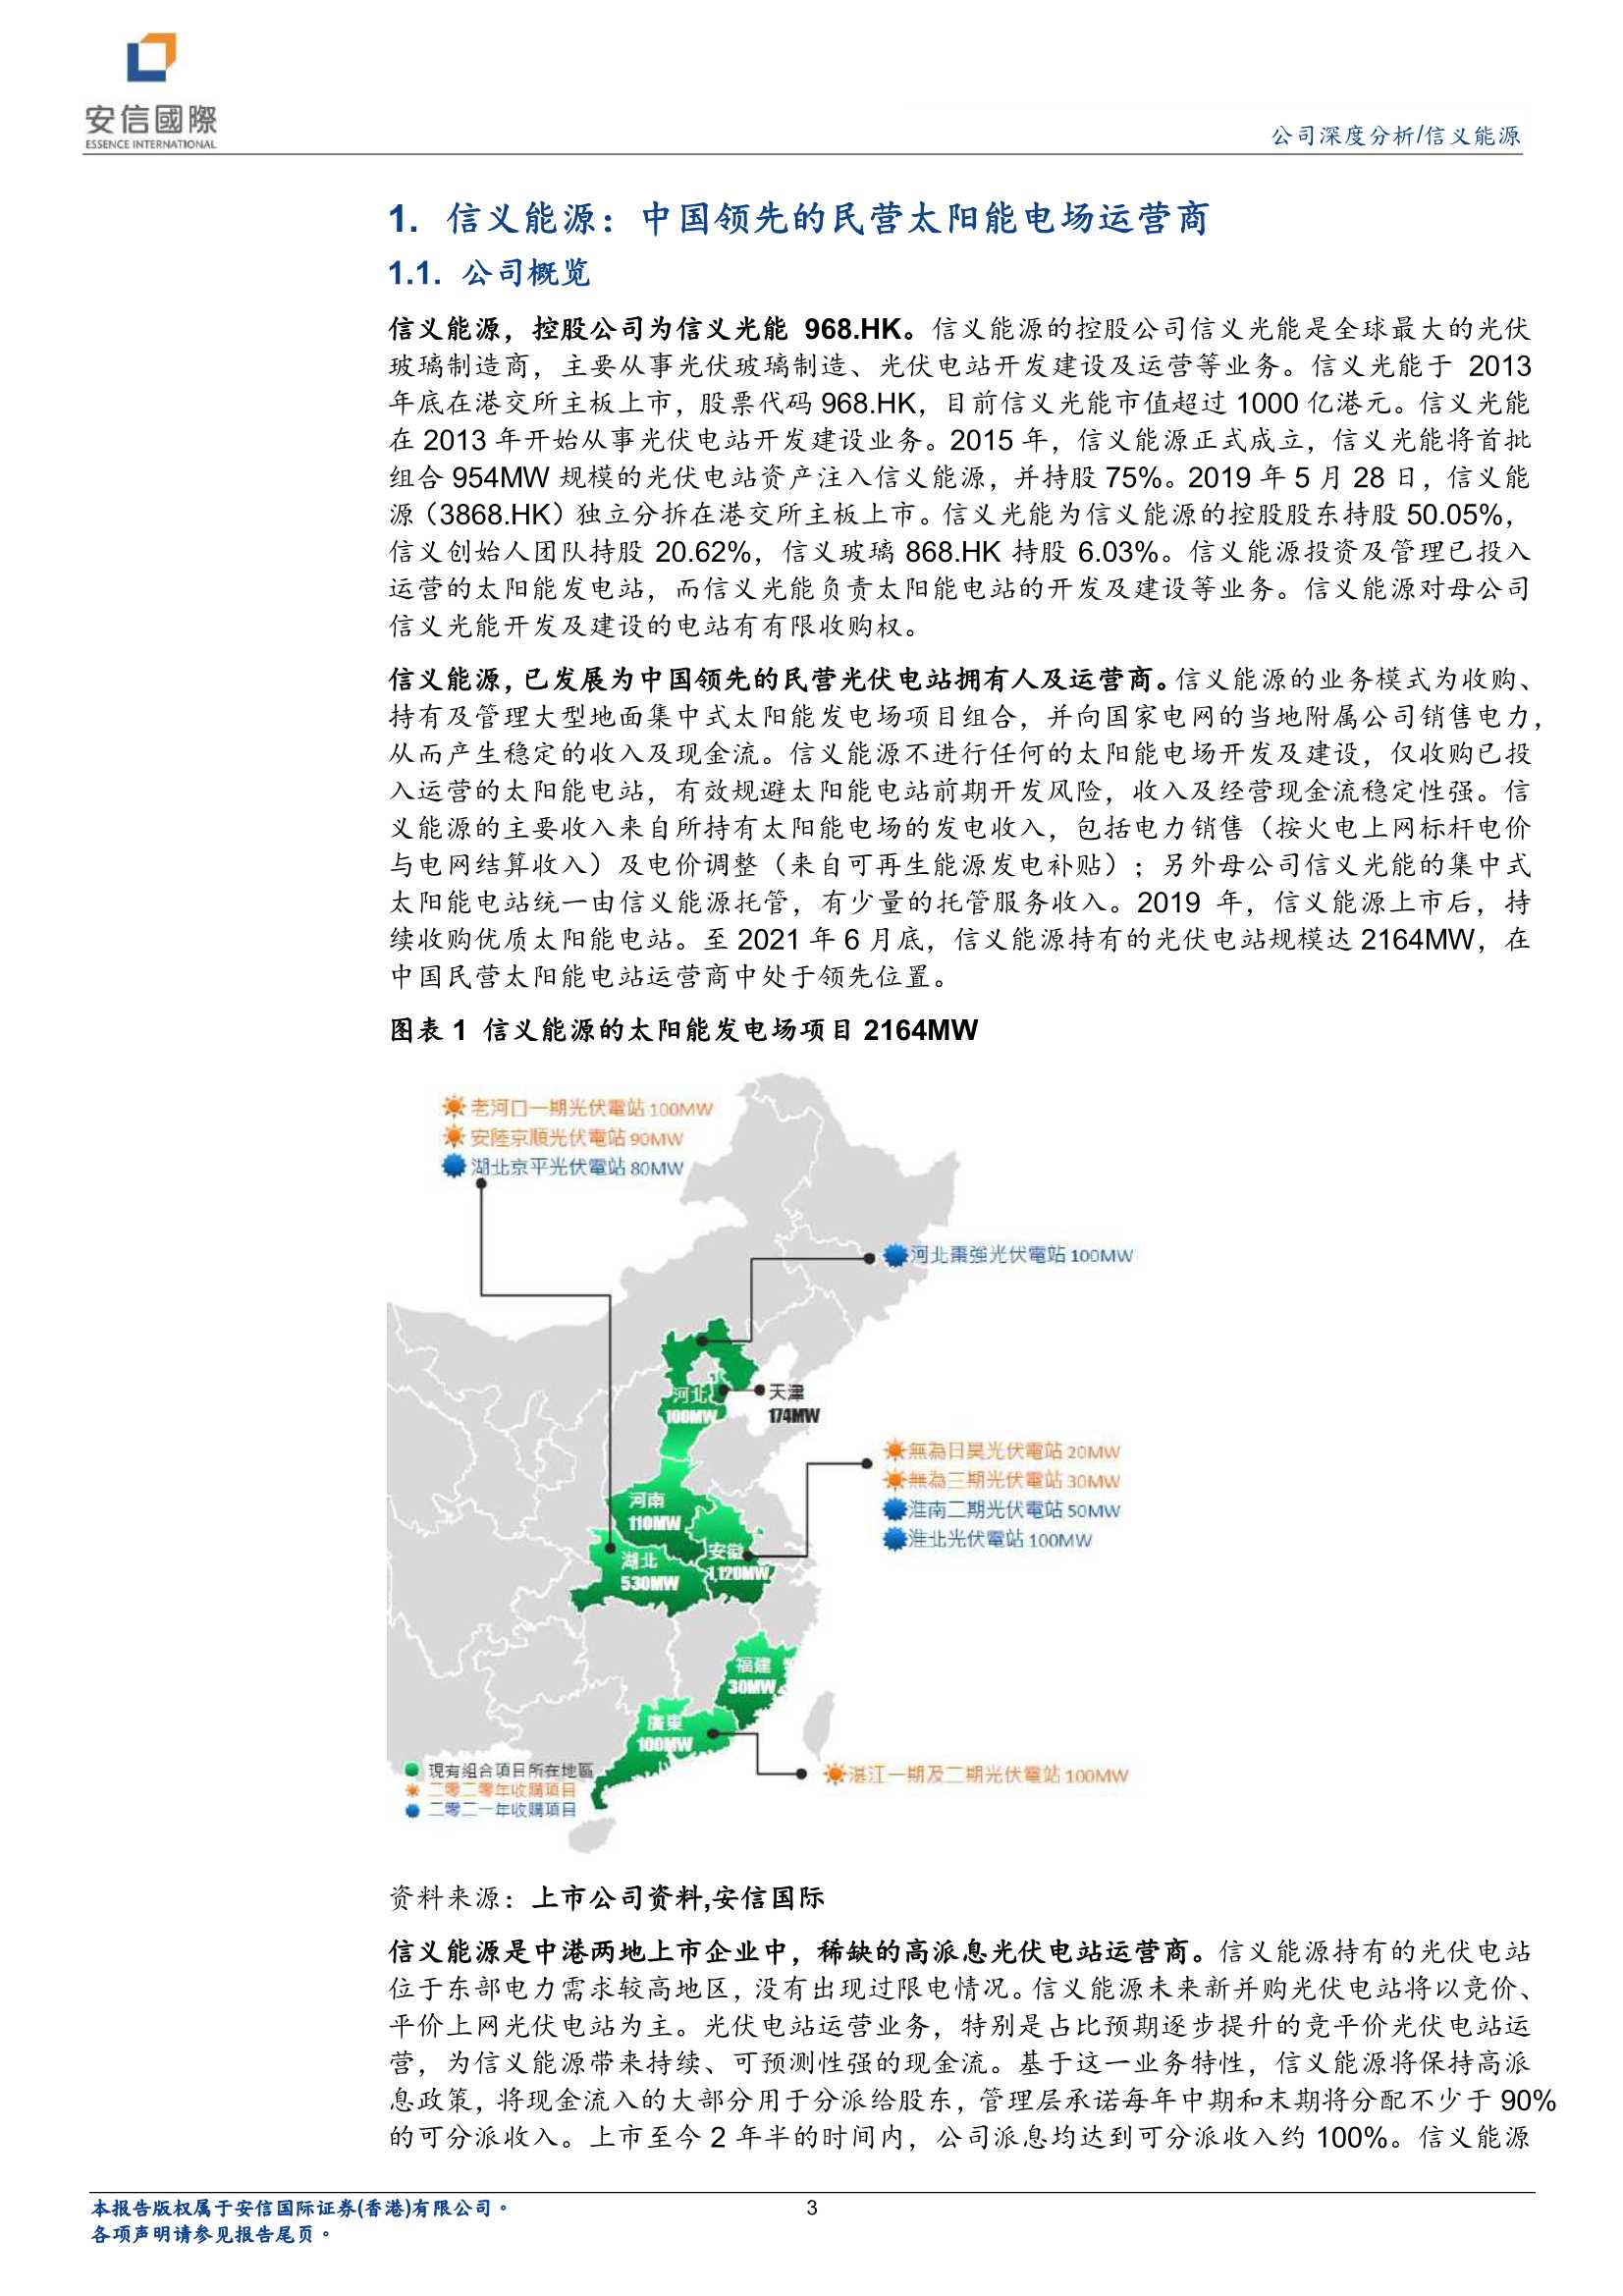 安信国际-信义能源-3868.HK-高分红的纯光伏电站运营商-20211221-21页